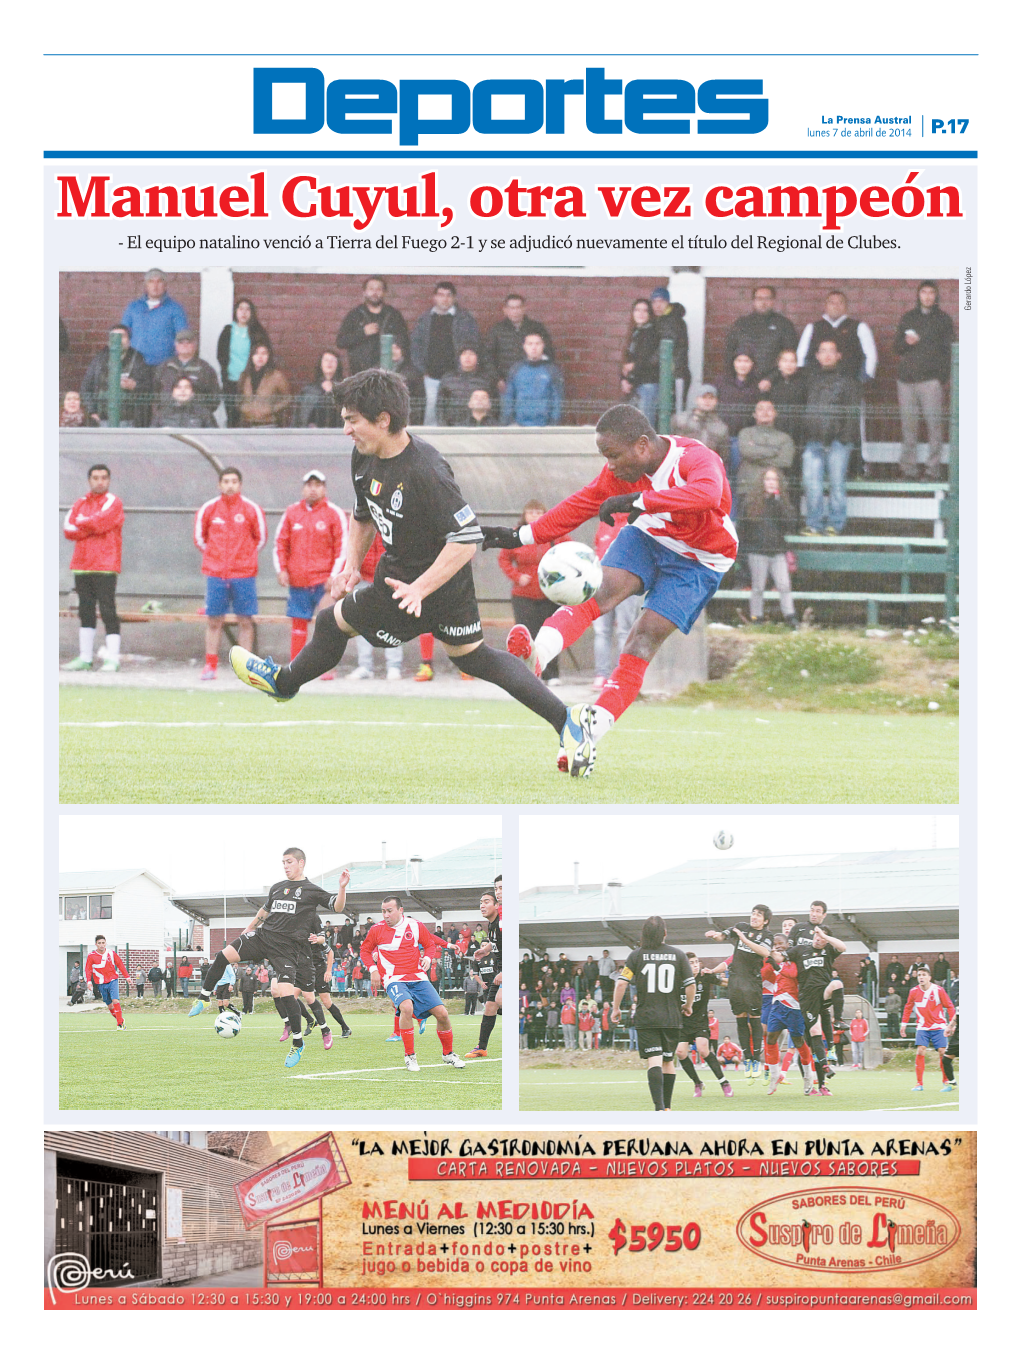 Manuel Cuyul, Otra Vez Campeón - El Equipo Natalino Venció a Tierra Del Fuego 2-1 Y Se Adjudicó Nuevamente El Título Del Regional De Clubes